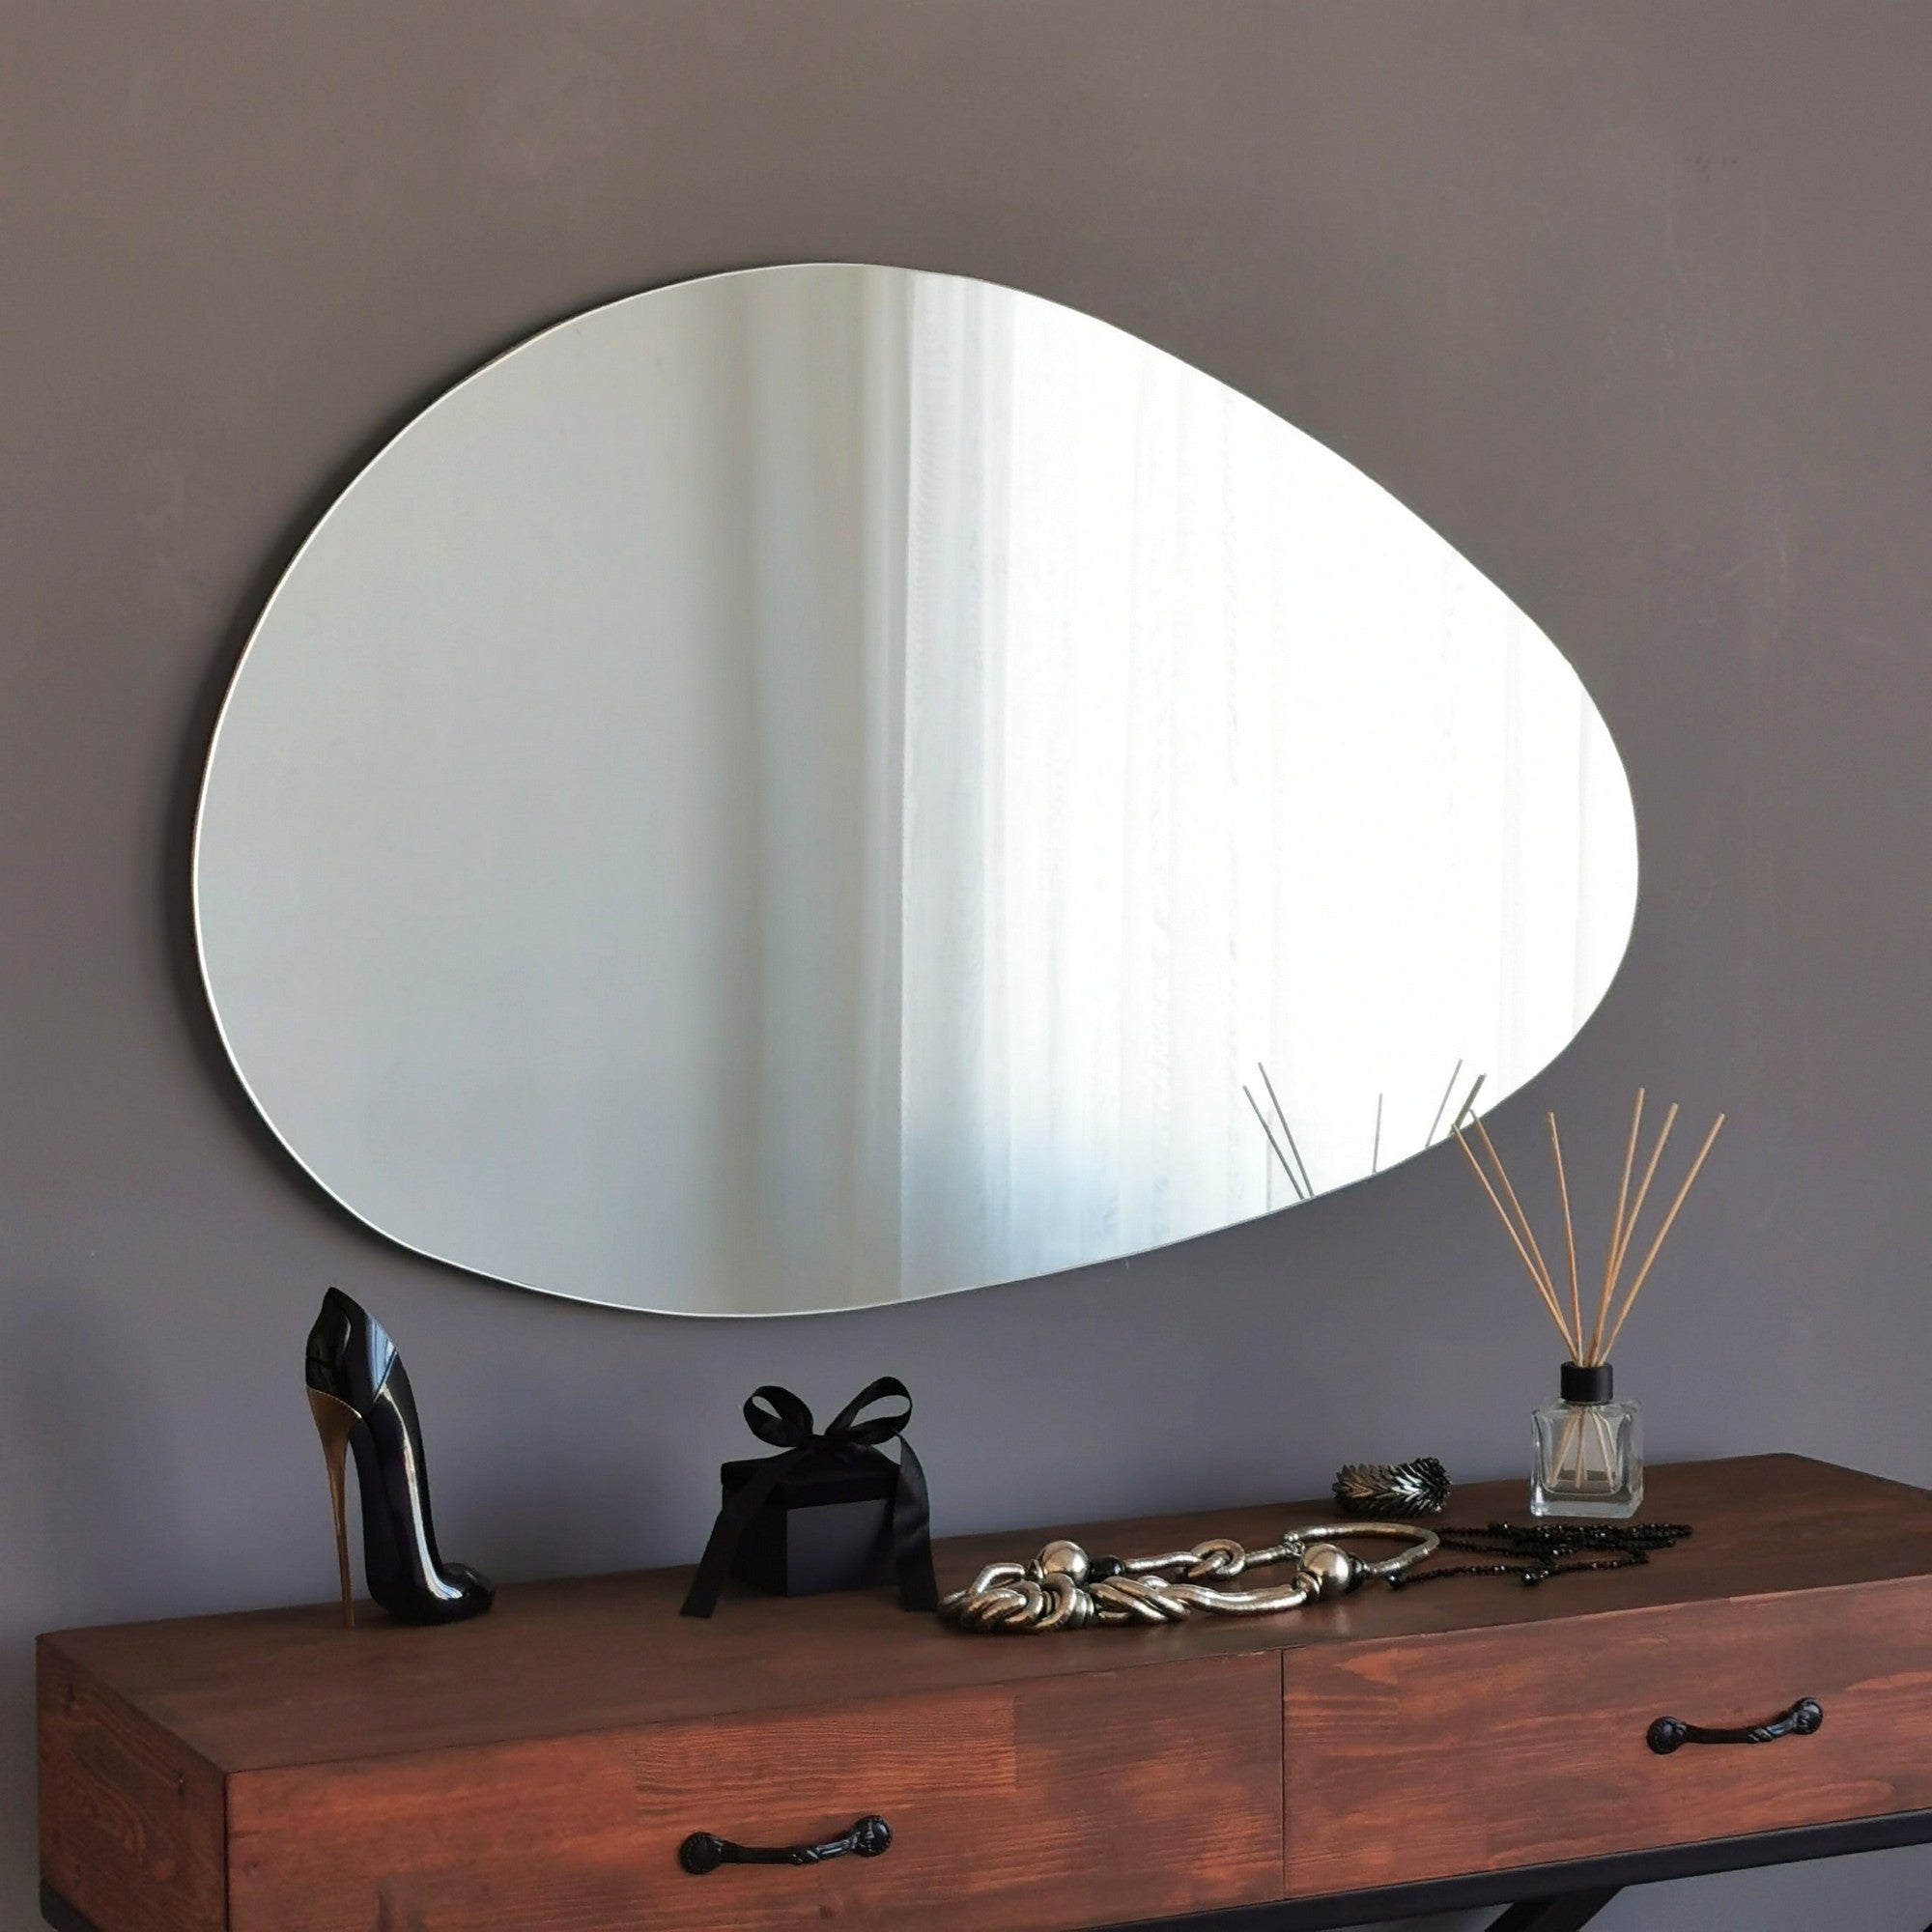 Specchio irregolare design verticale e orizzontale – Colly Shop